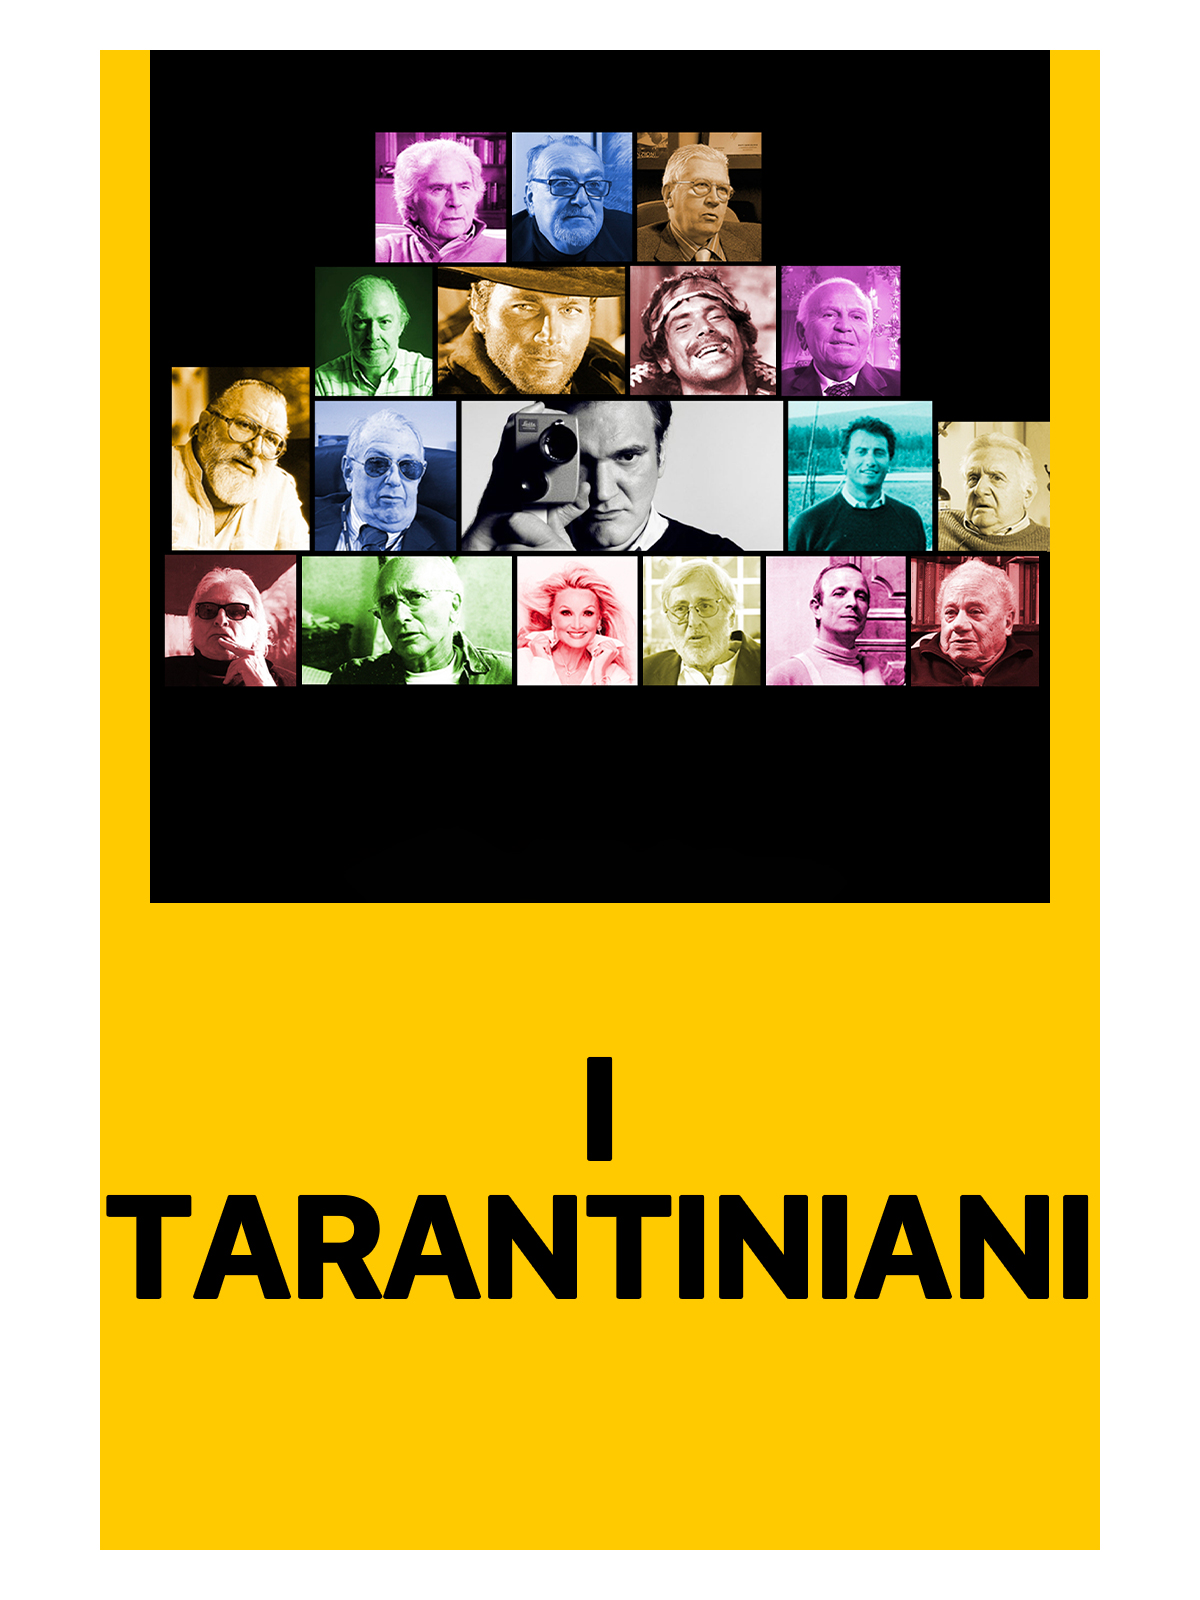 I Tarantiniani